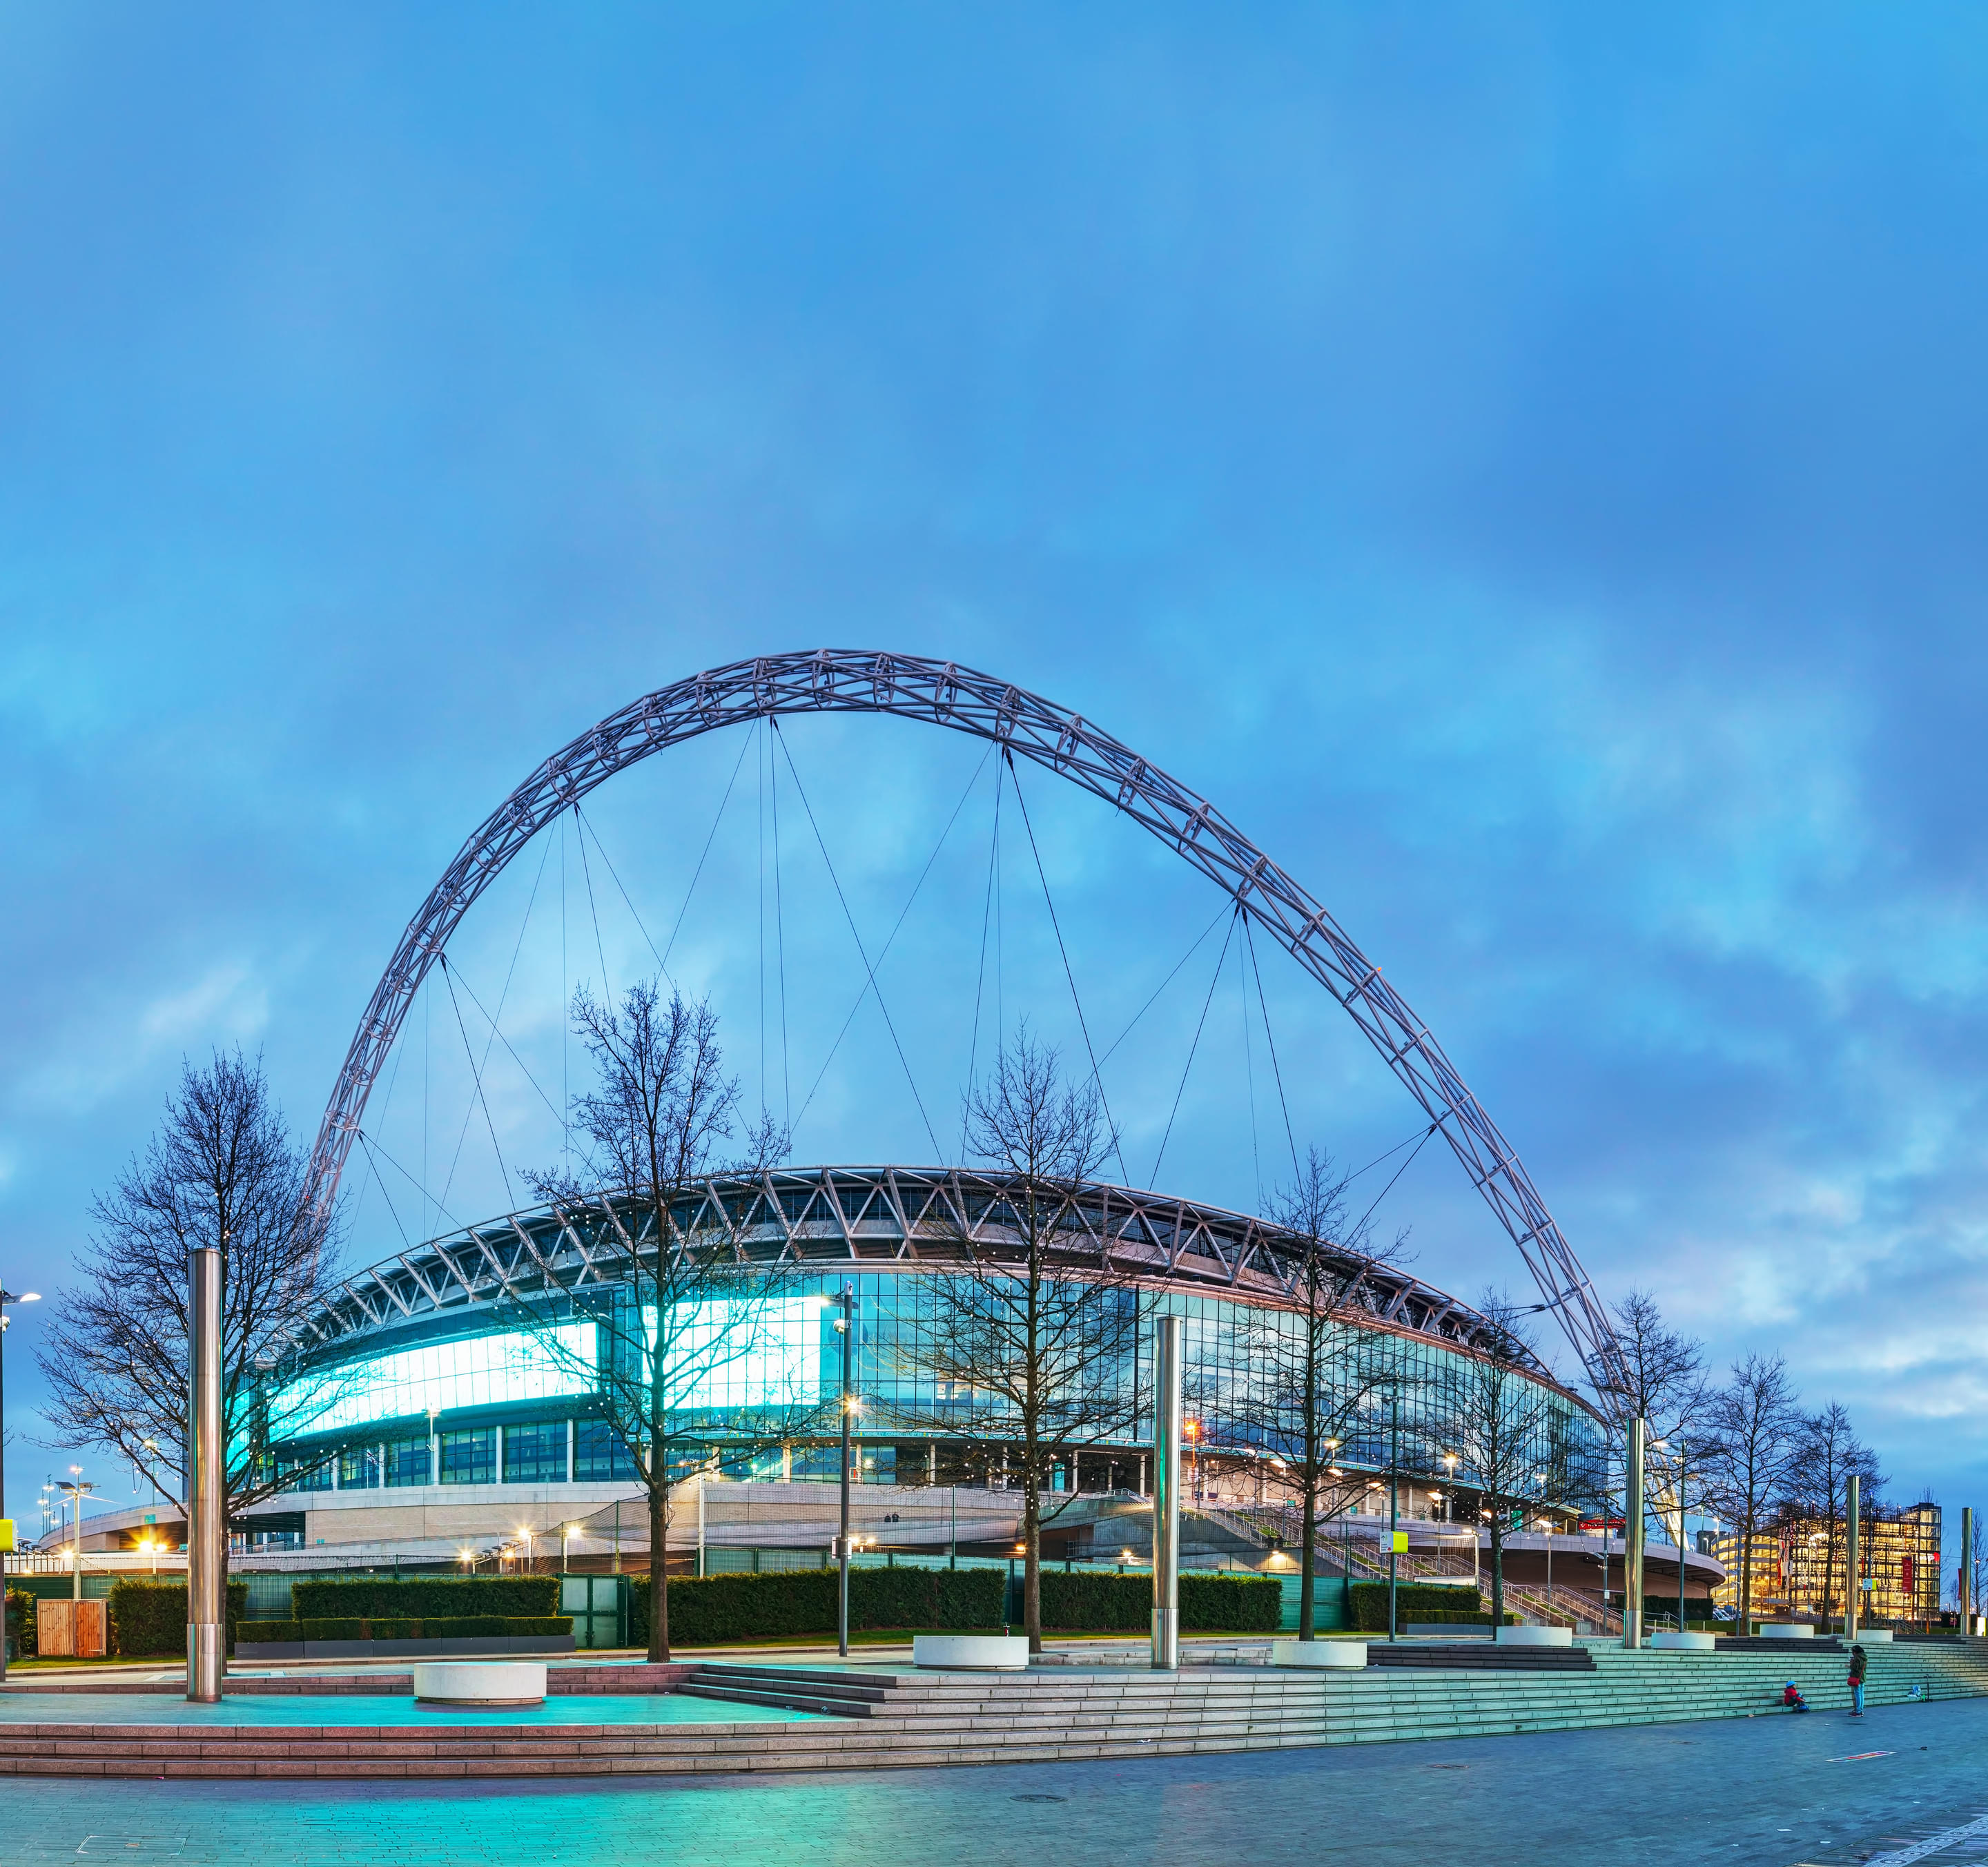 Wembley Park Overview